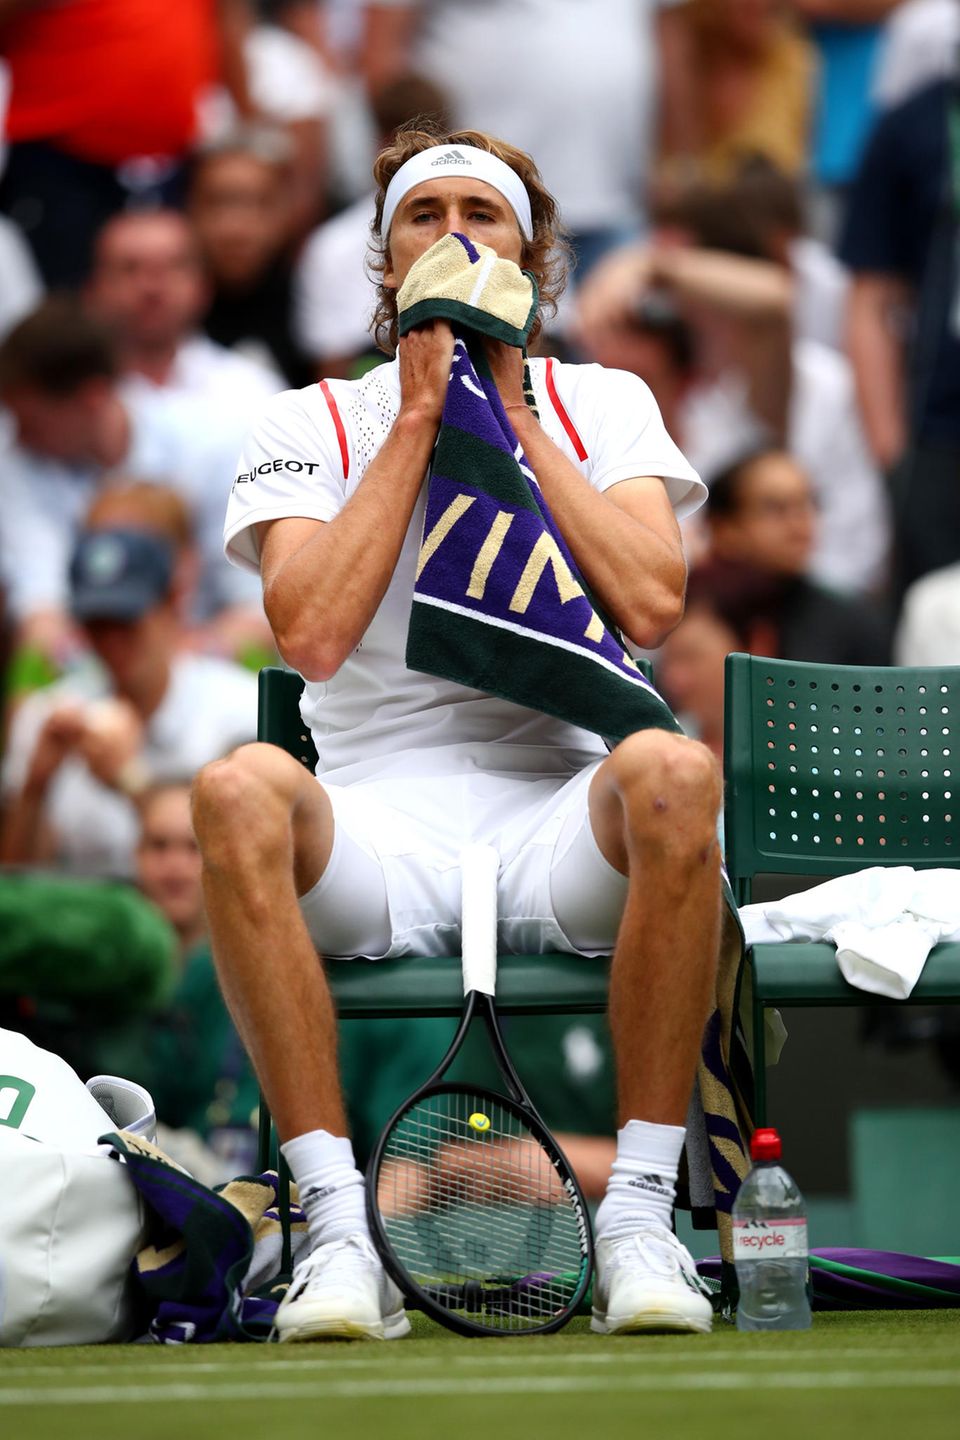 Sichtlich enttäuscht: Alexander Zverev nach seinem überraschenden Erstrunden-Aus in Wimbledon.